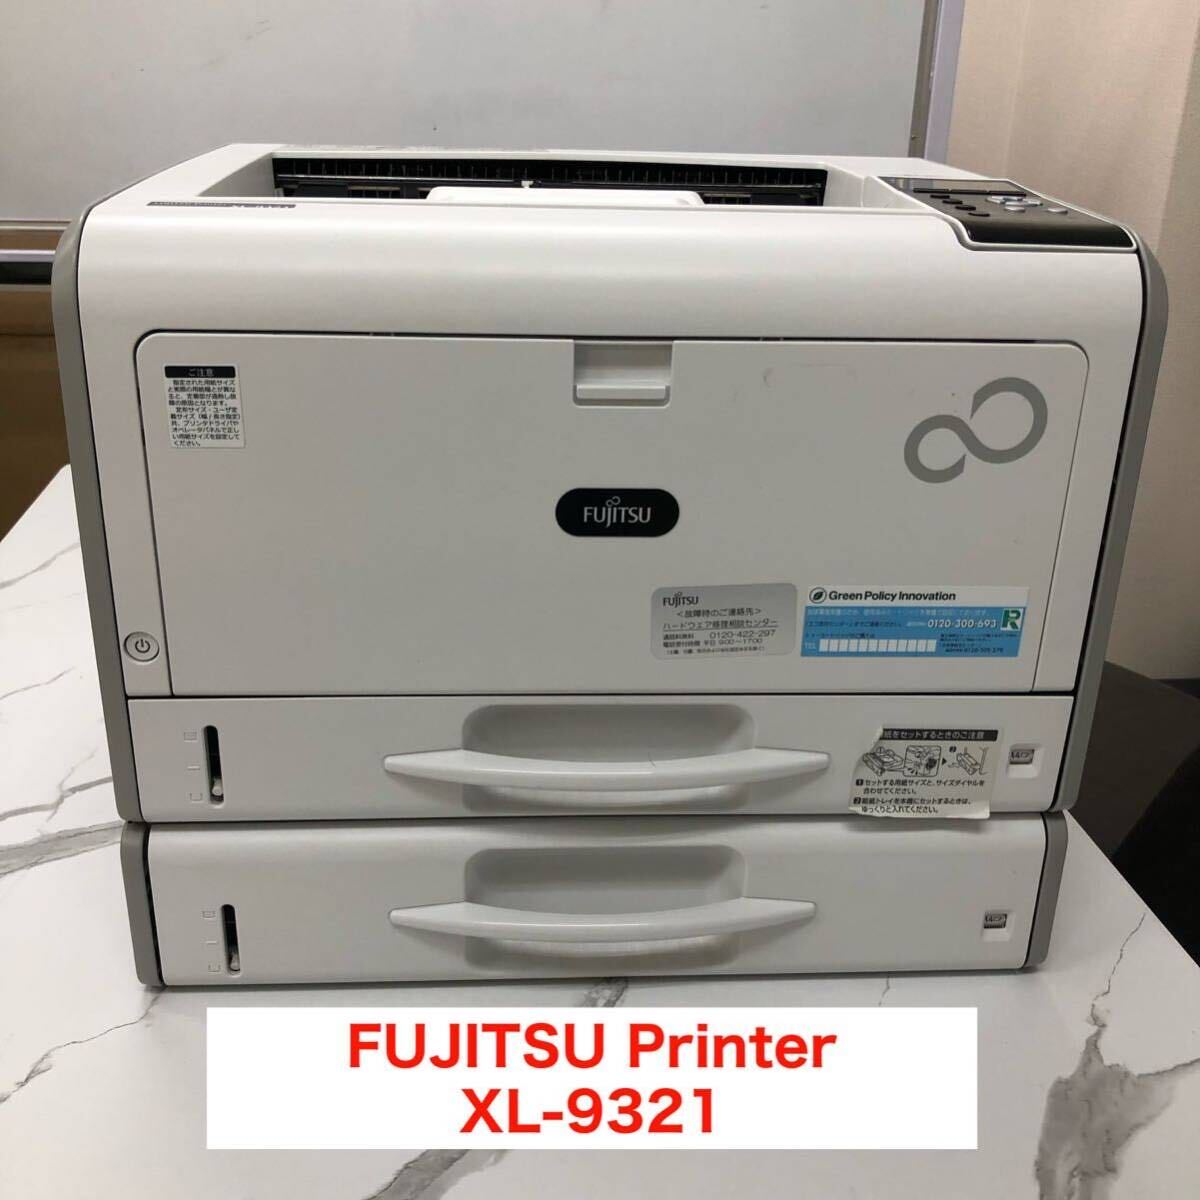  Fujitsu лазерный принтер - для бизнеса FUJITSU Printer XL-9321